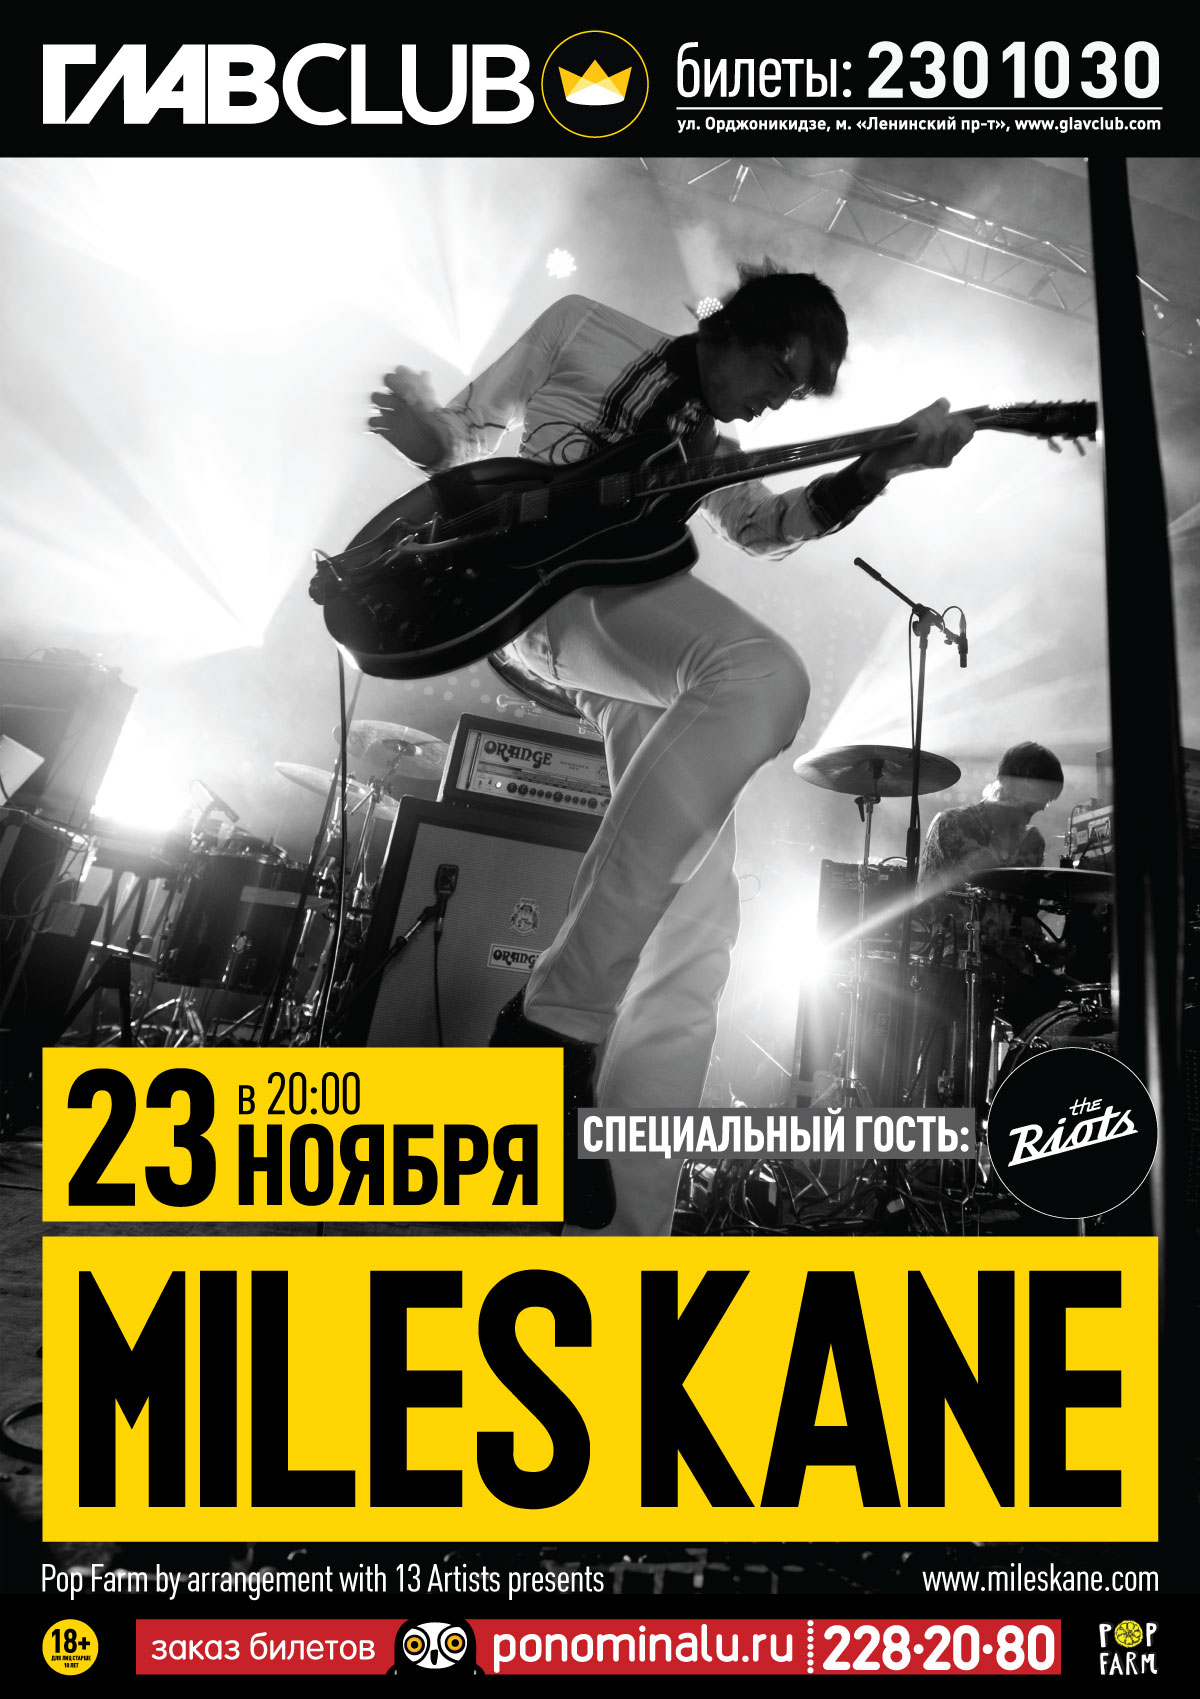 Miles Kane promo